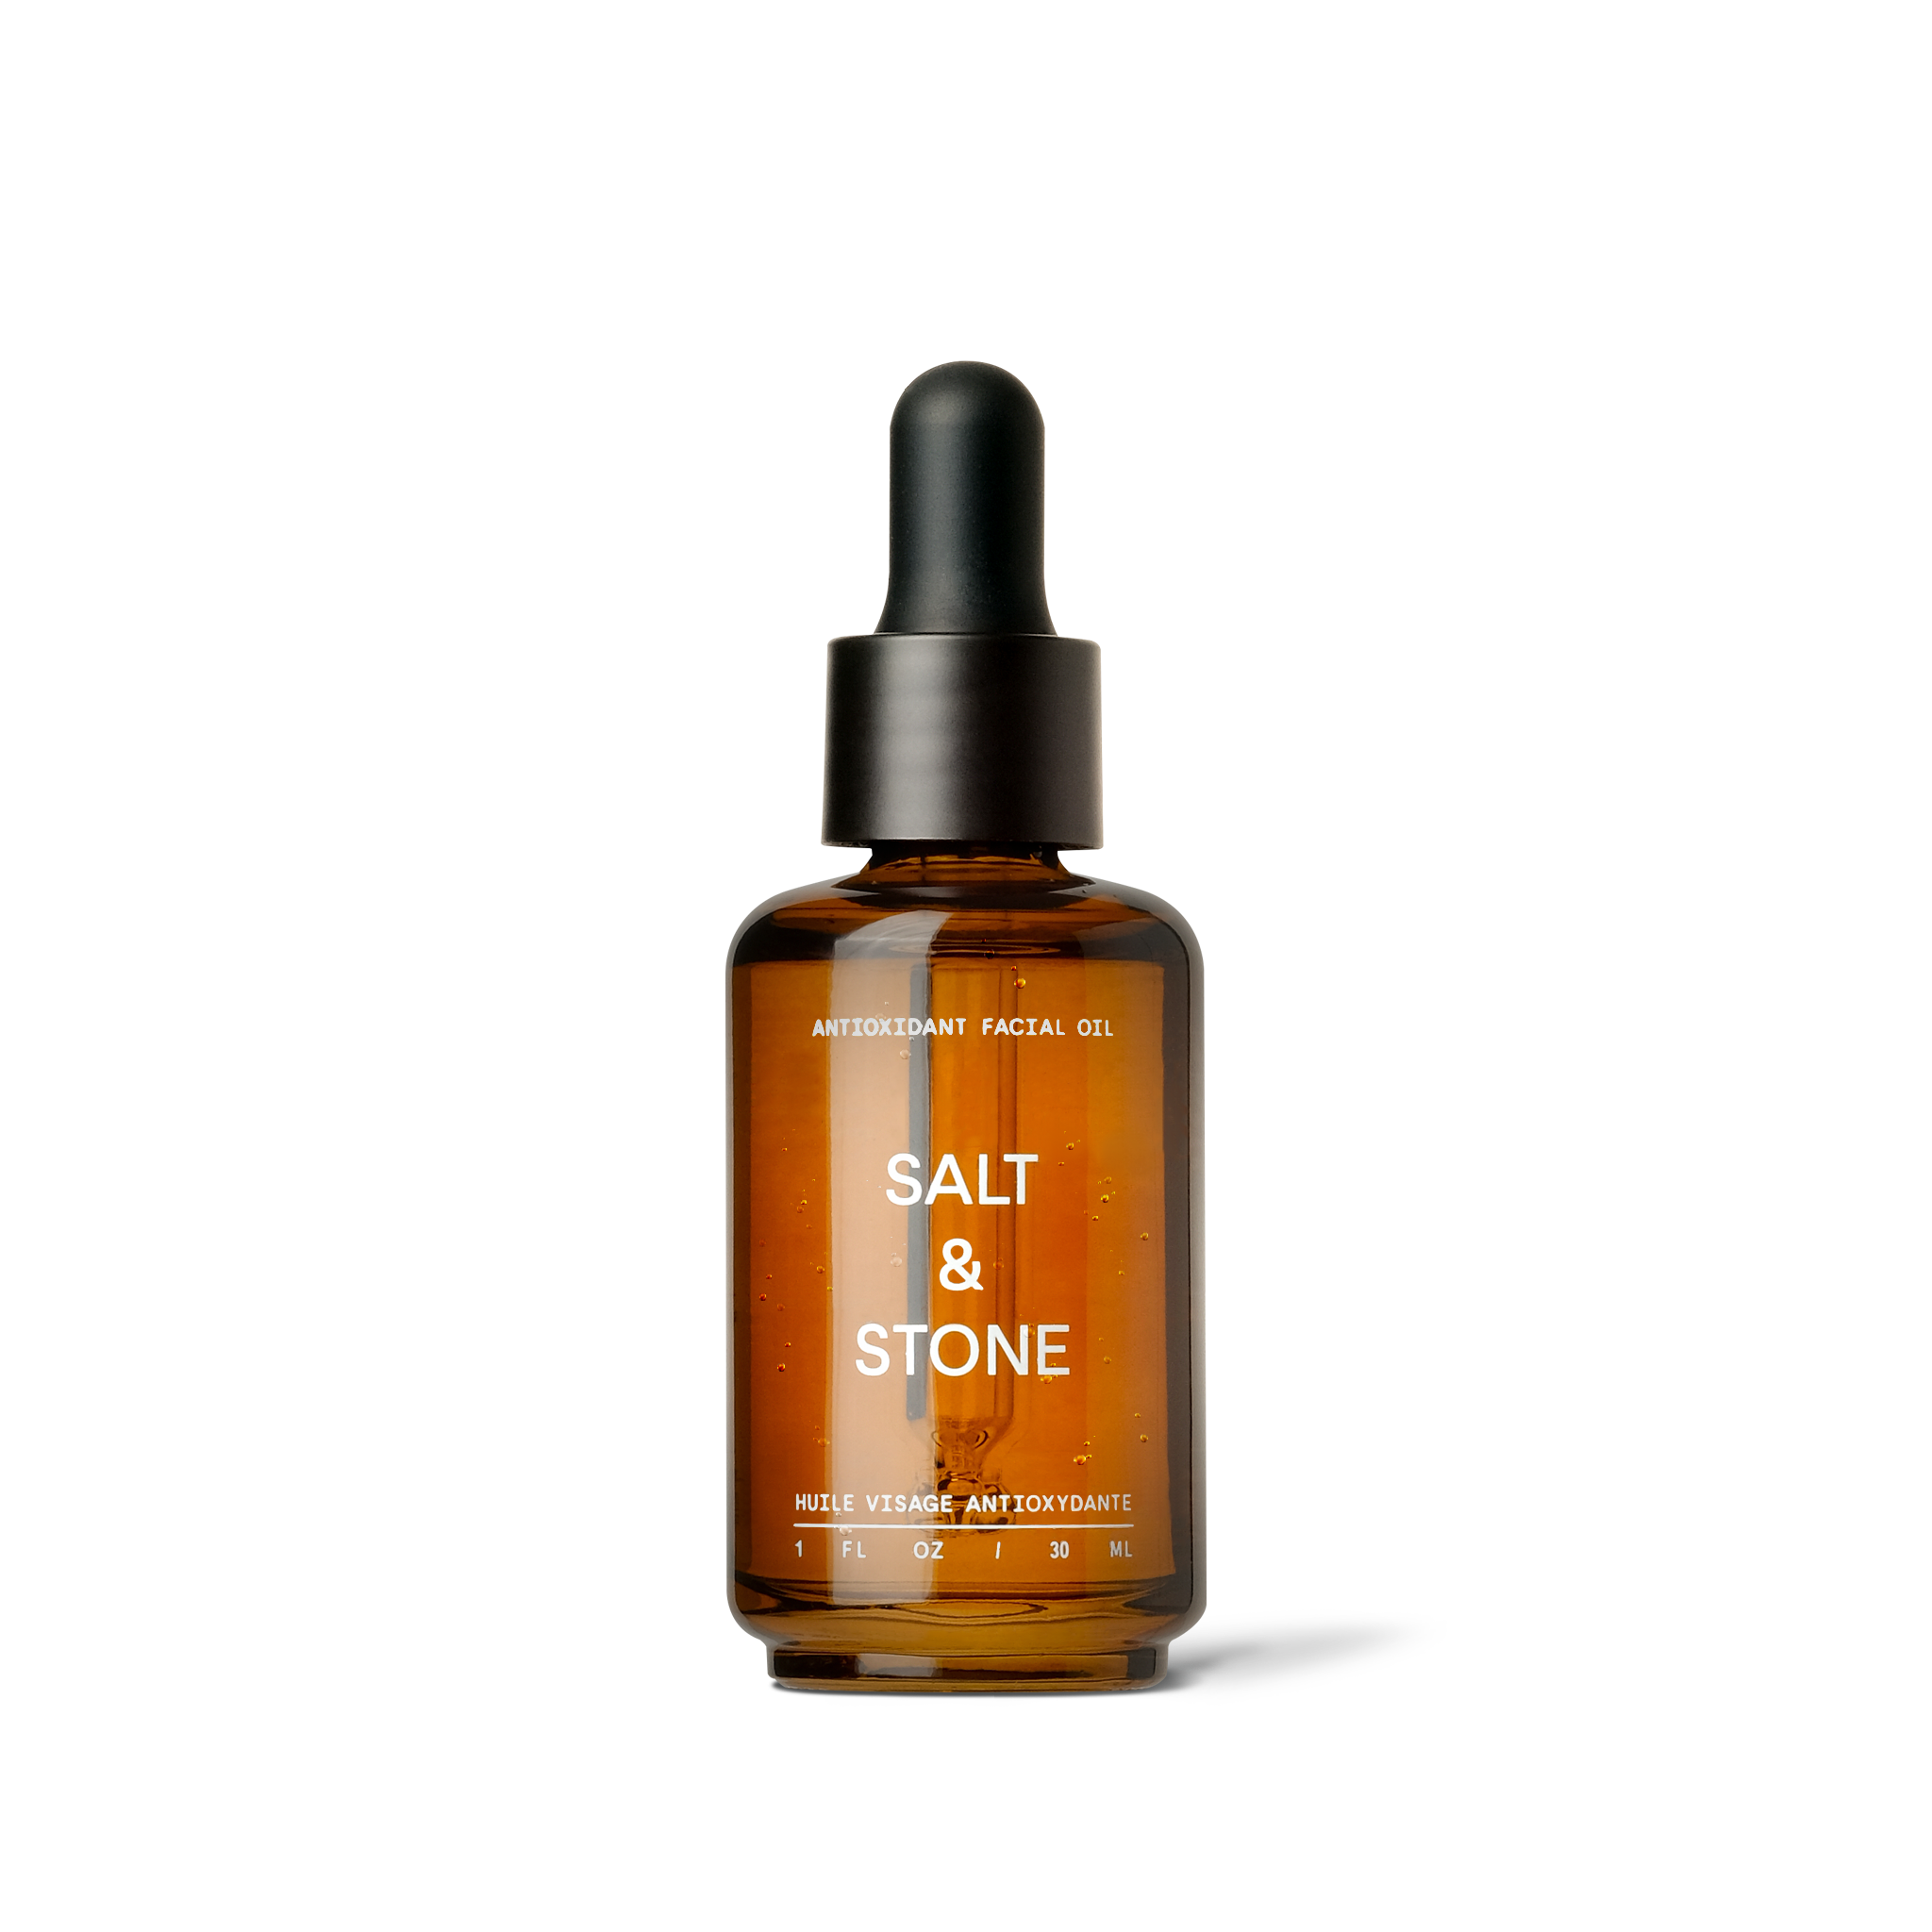 Salt & Stone Antioxidant Facial Oil